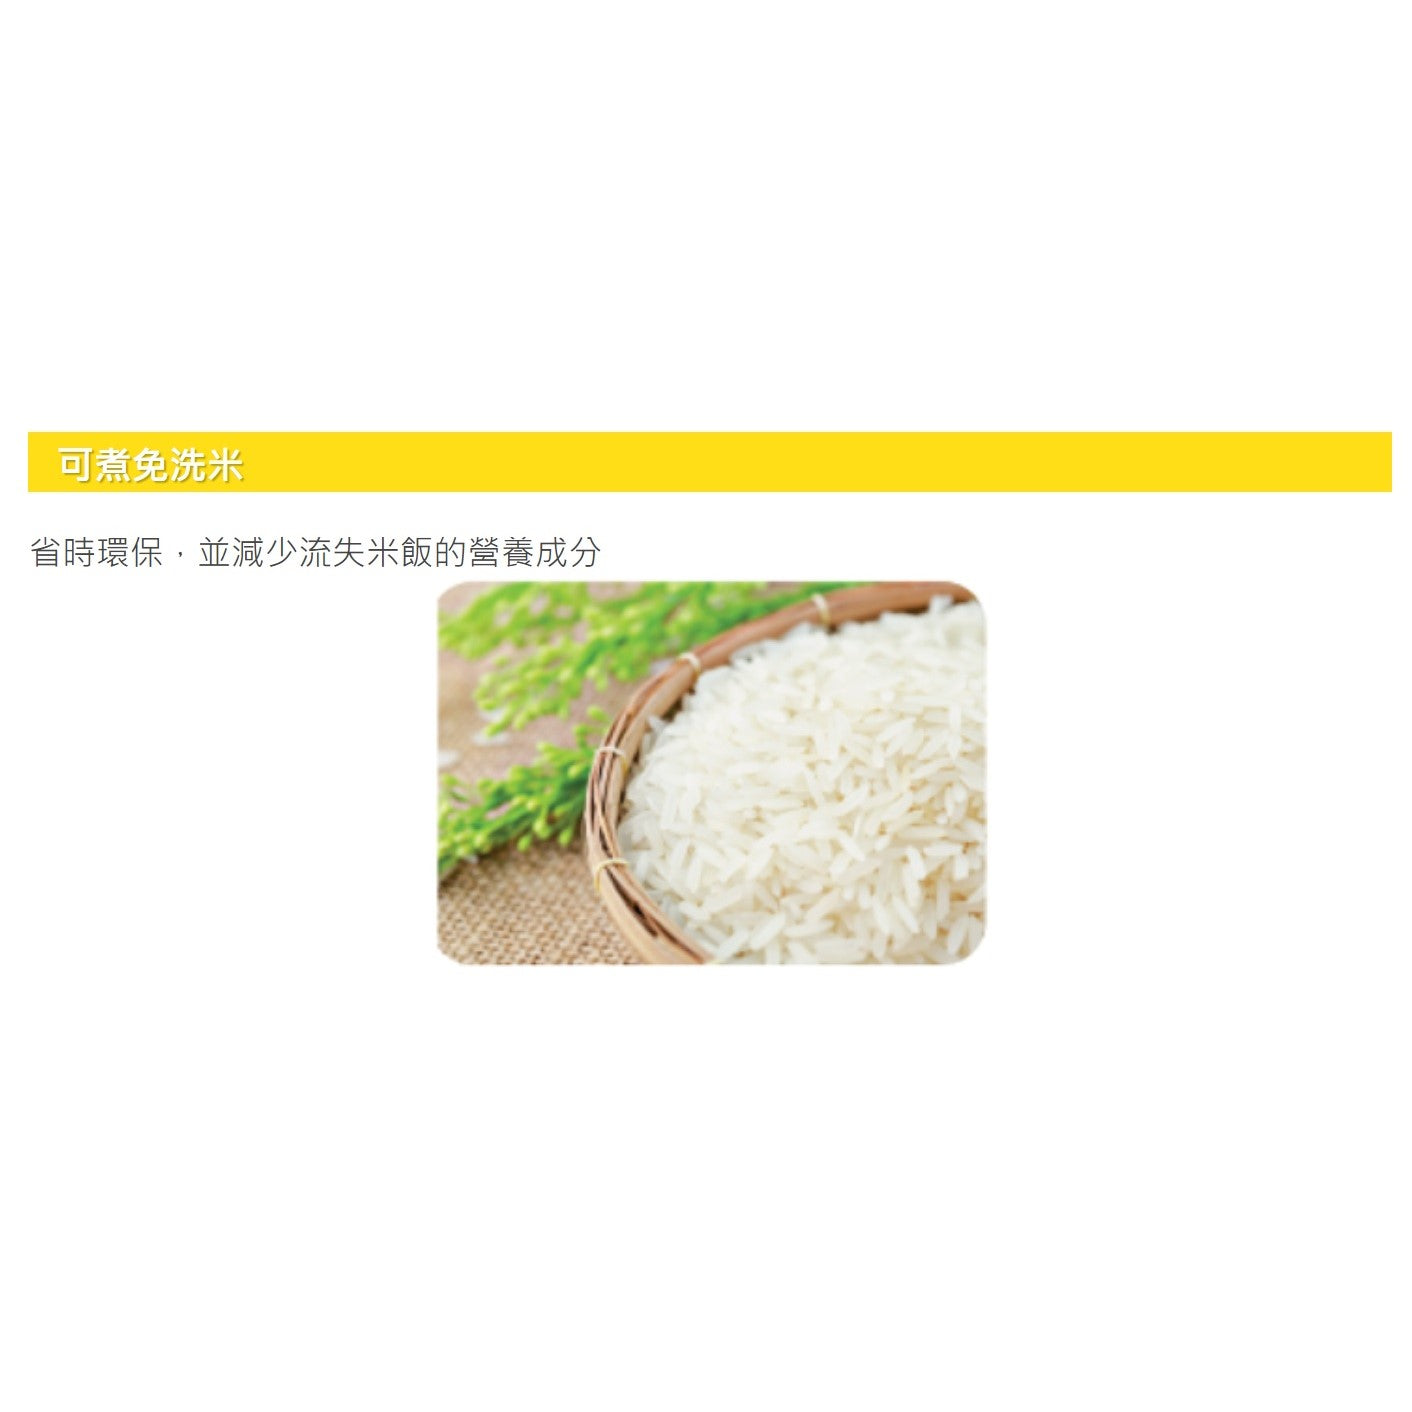 Zojirushi Rice Cooker NS-ZAQ10/18 (Made in Japan)